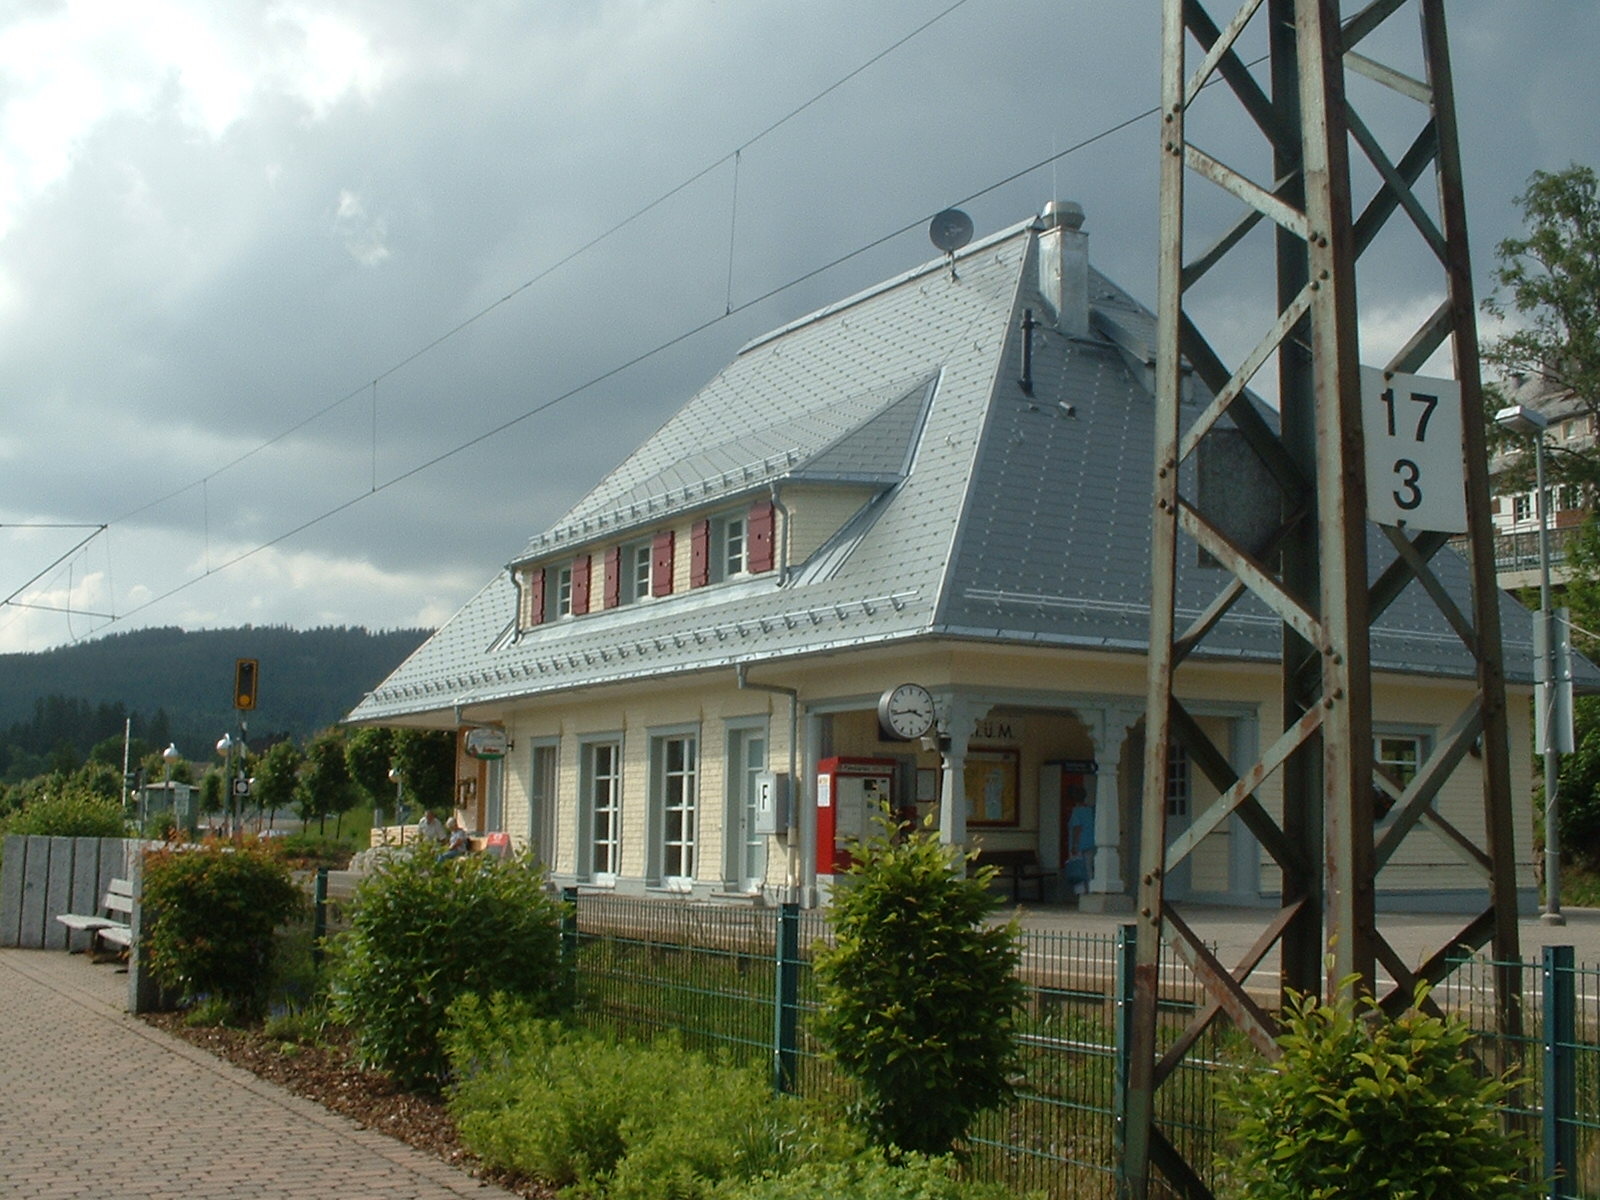 renovierter Bahnhof als gemütliches Lokal.